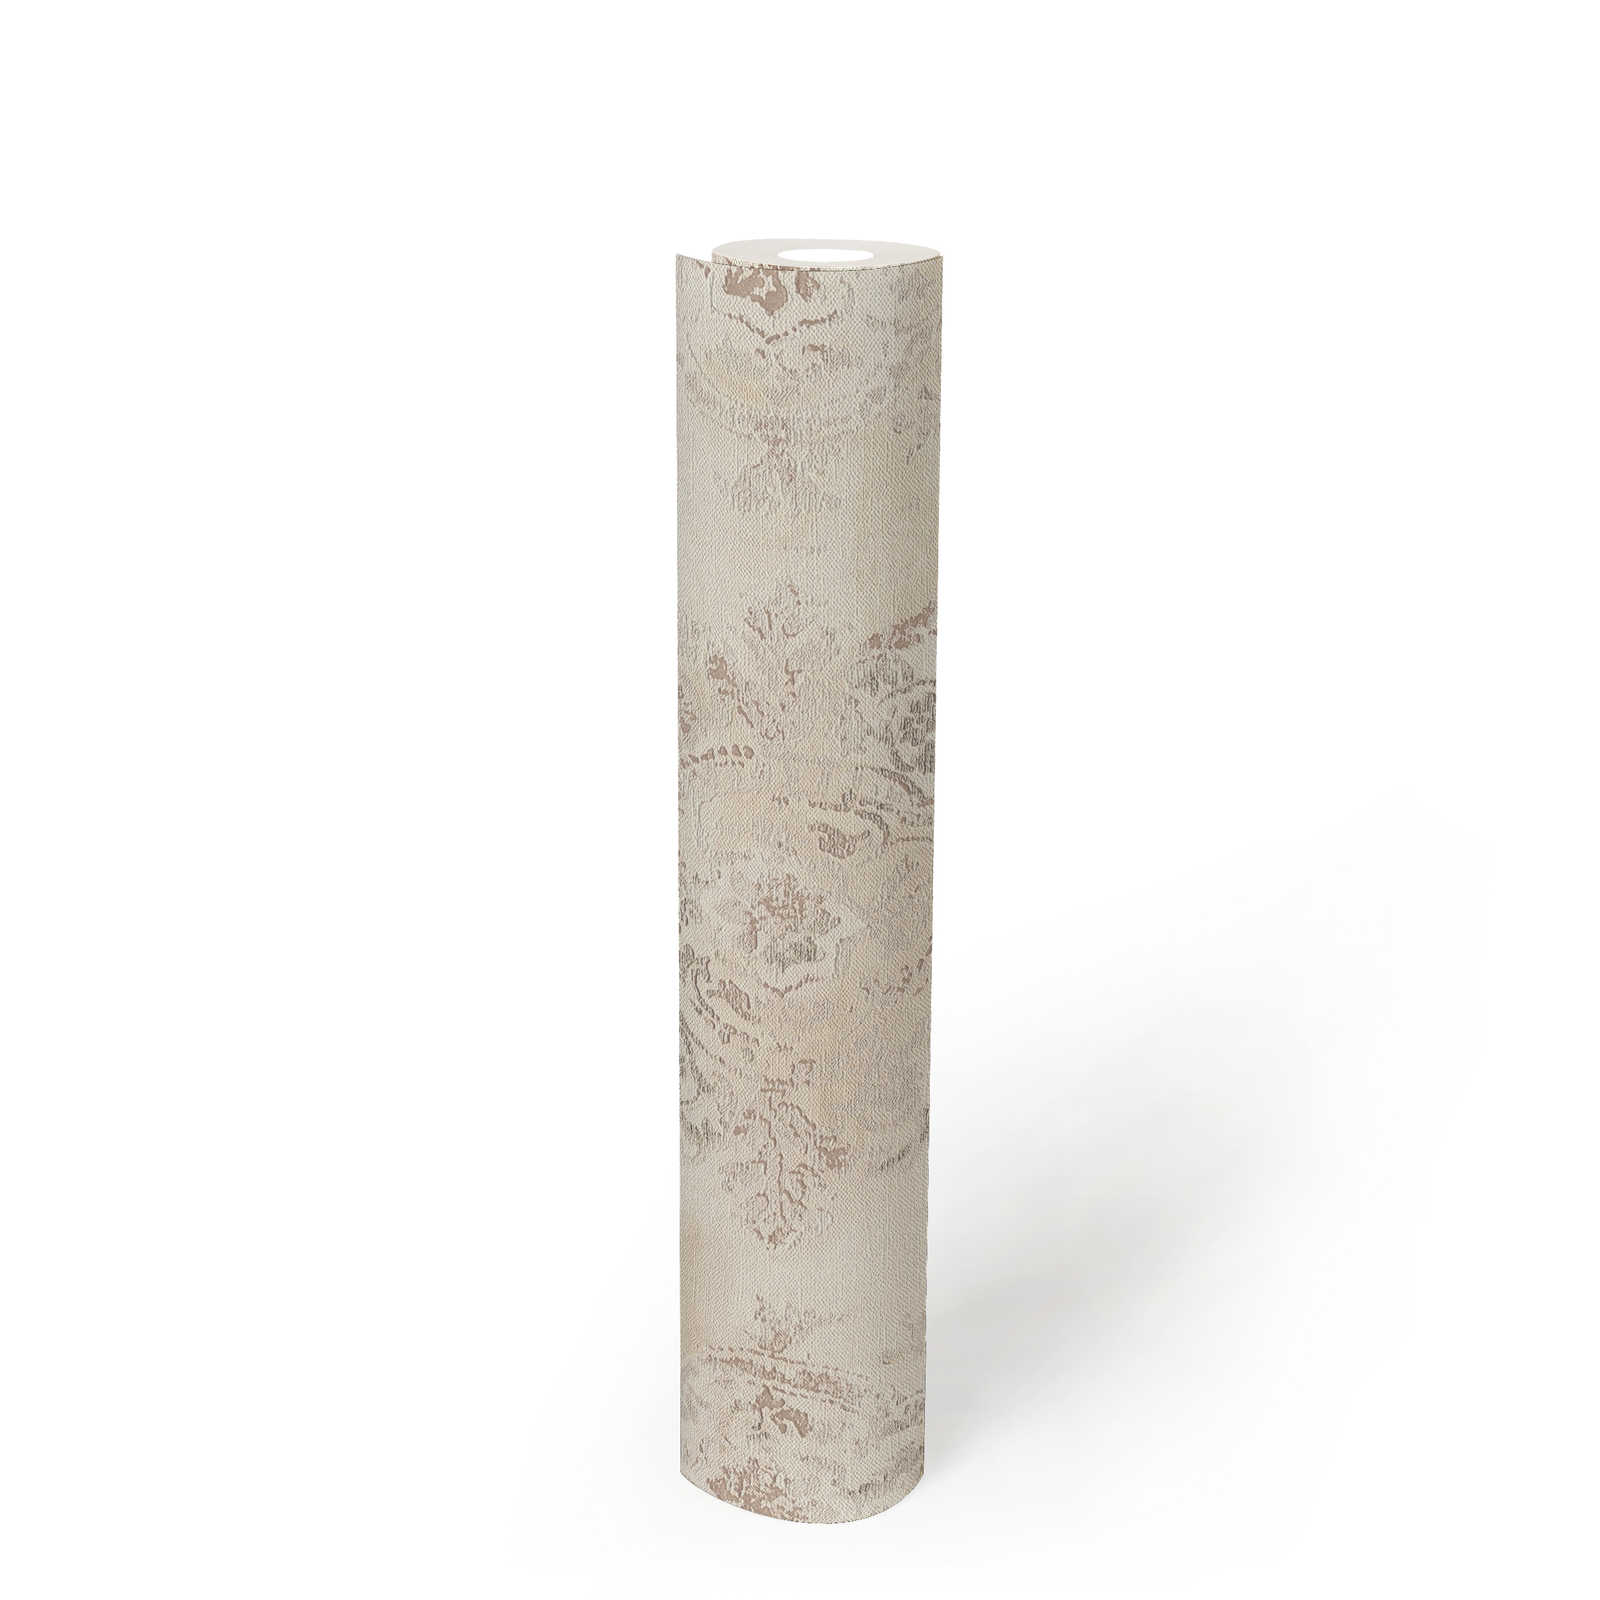             Papier peint aspect textile avec motif ornemental, aspect usé - métallique, crème, beige
        